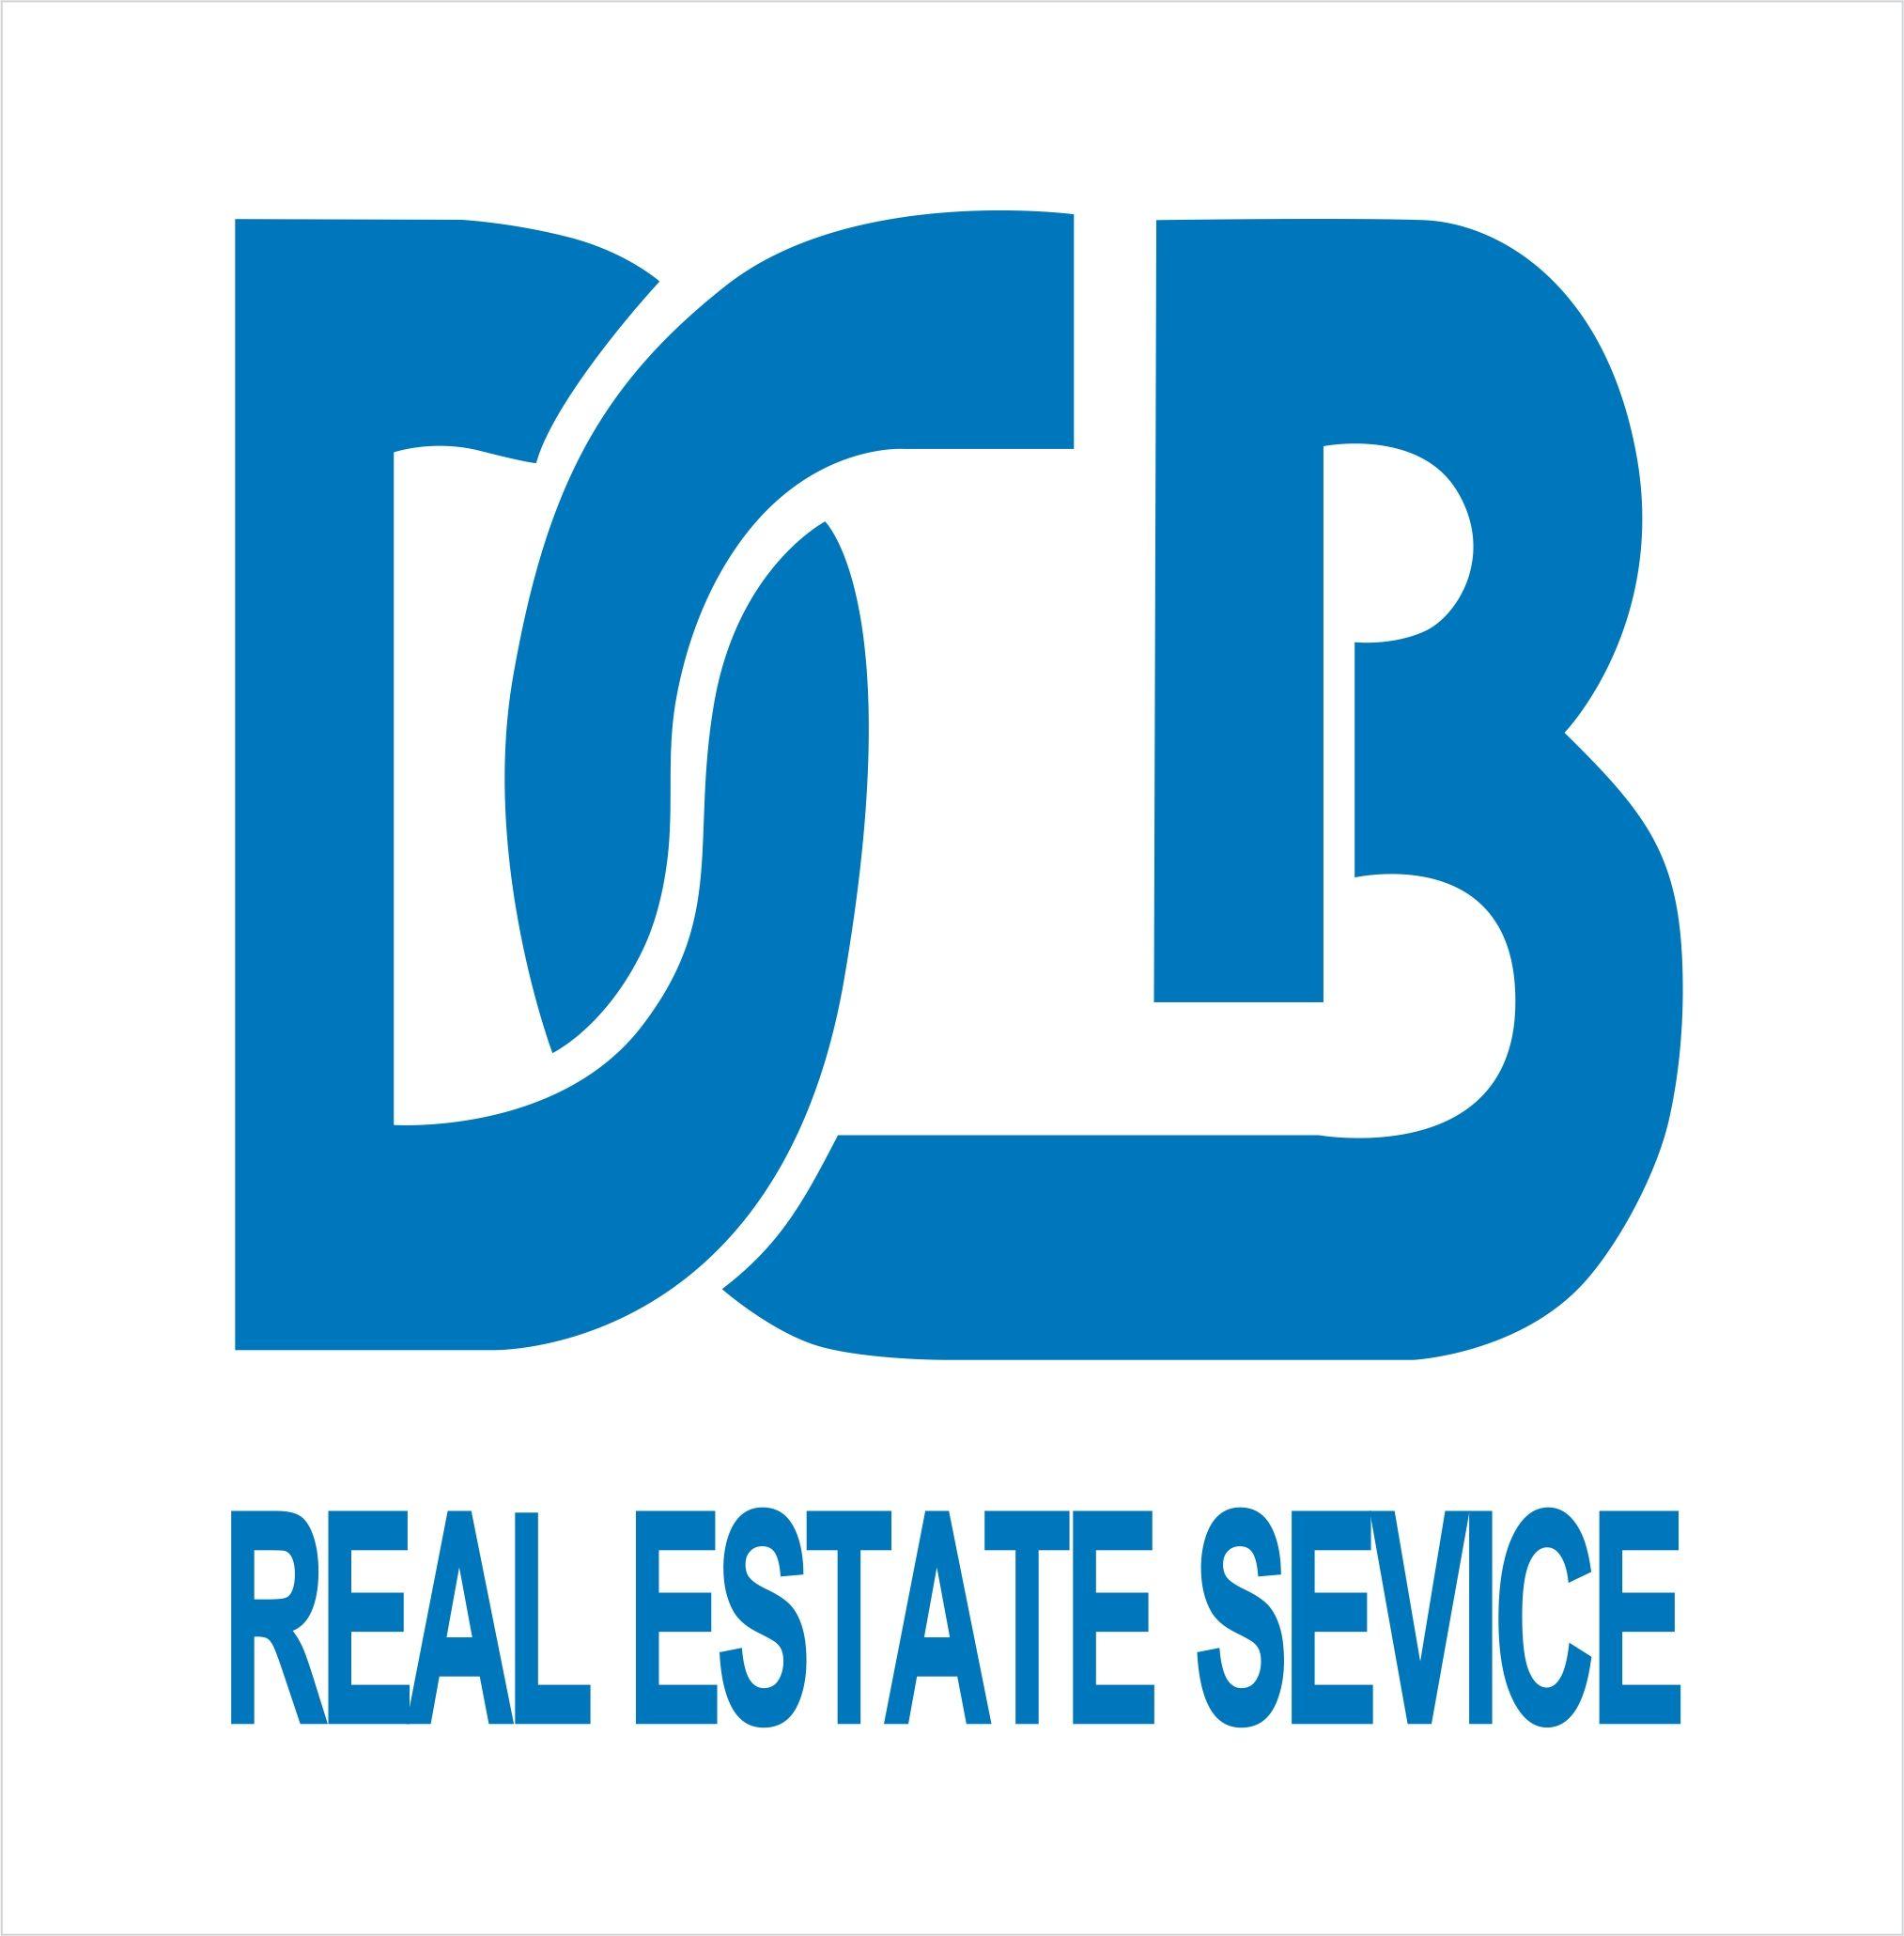 DCB Logo - File:DCB logo.jpg - Wikimedia Commons